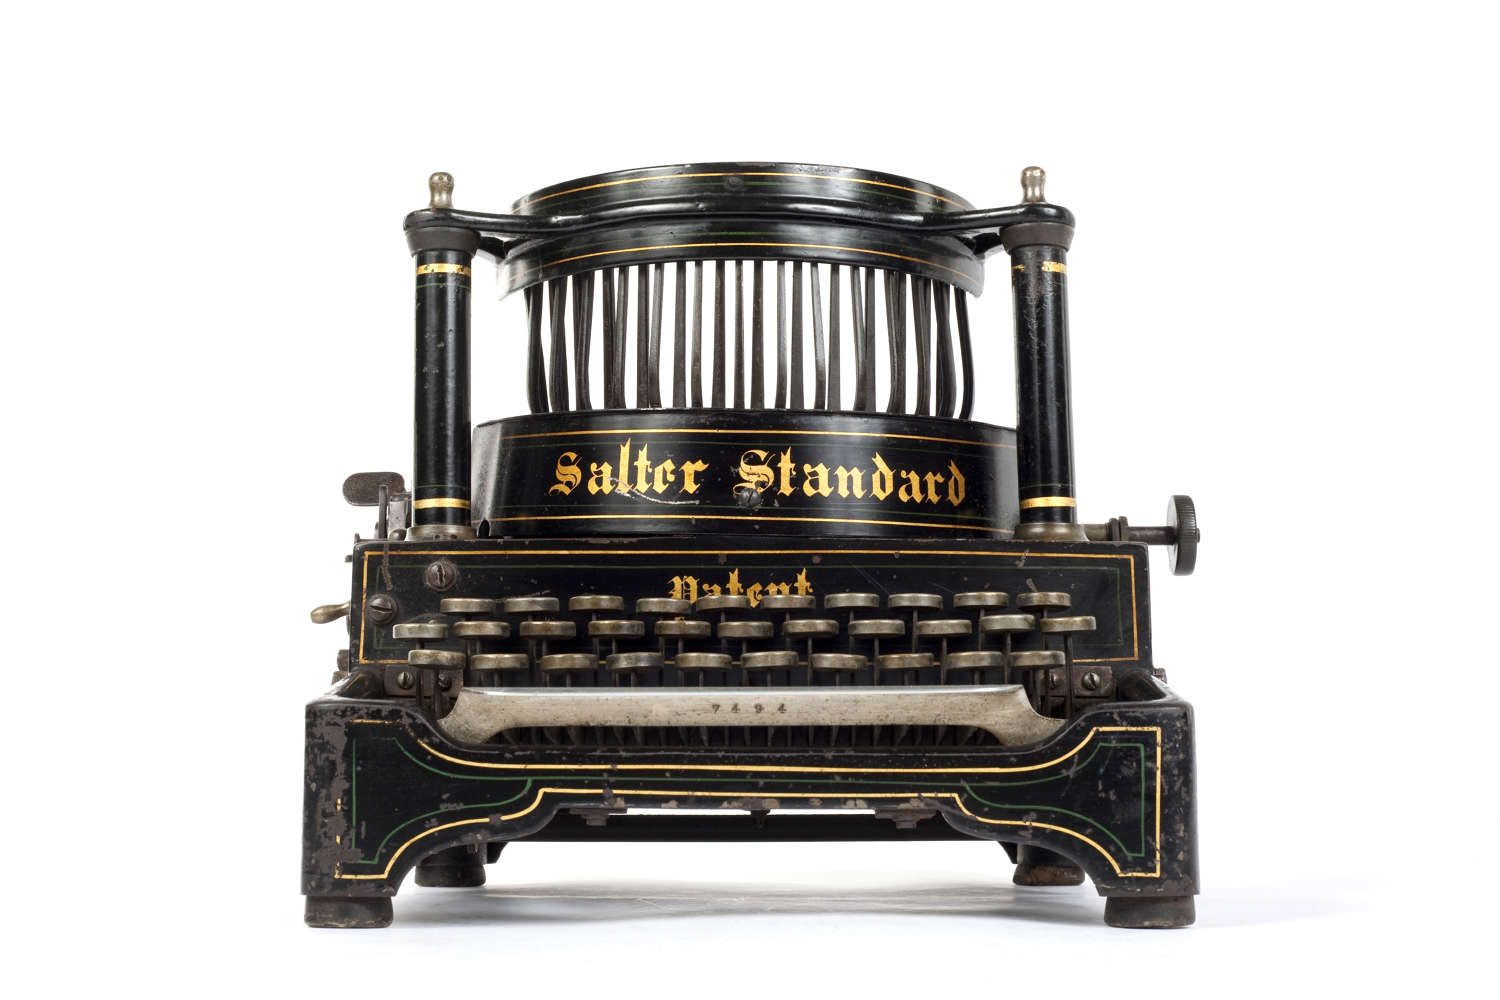 Salter Standard No.6 typewriter